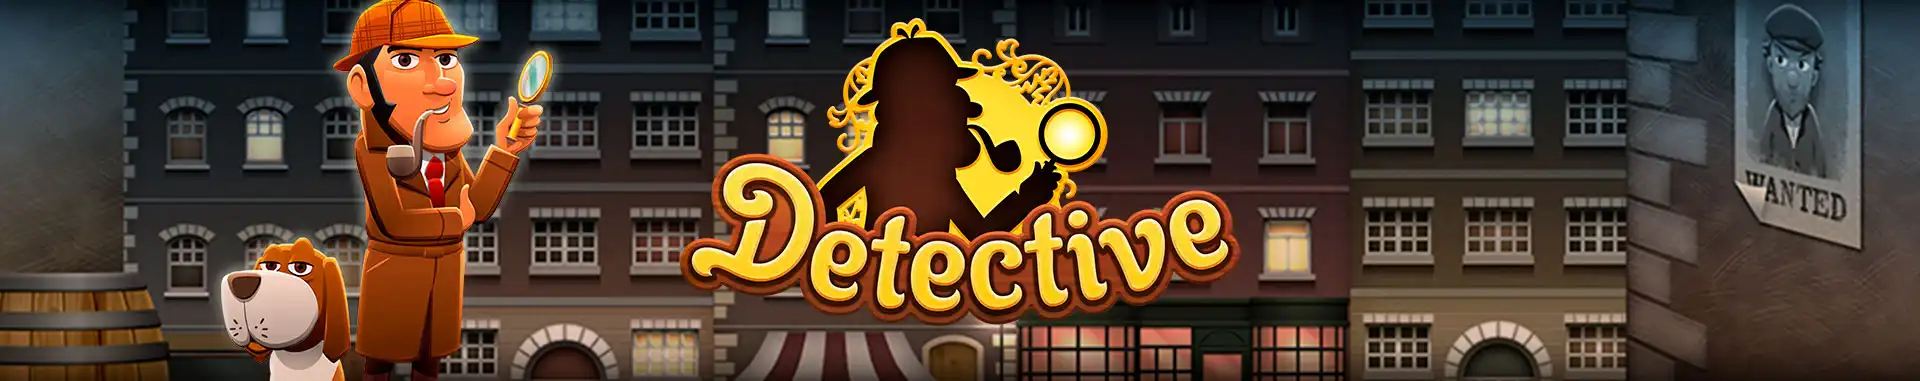 Video Bingo Online Detective